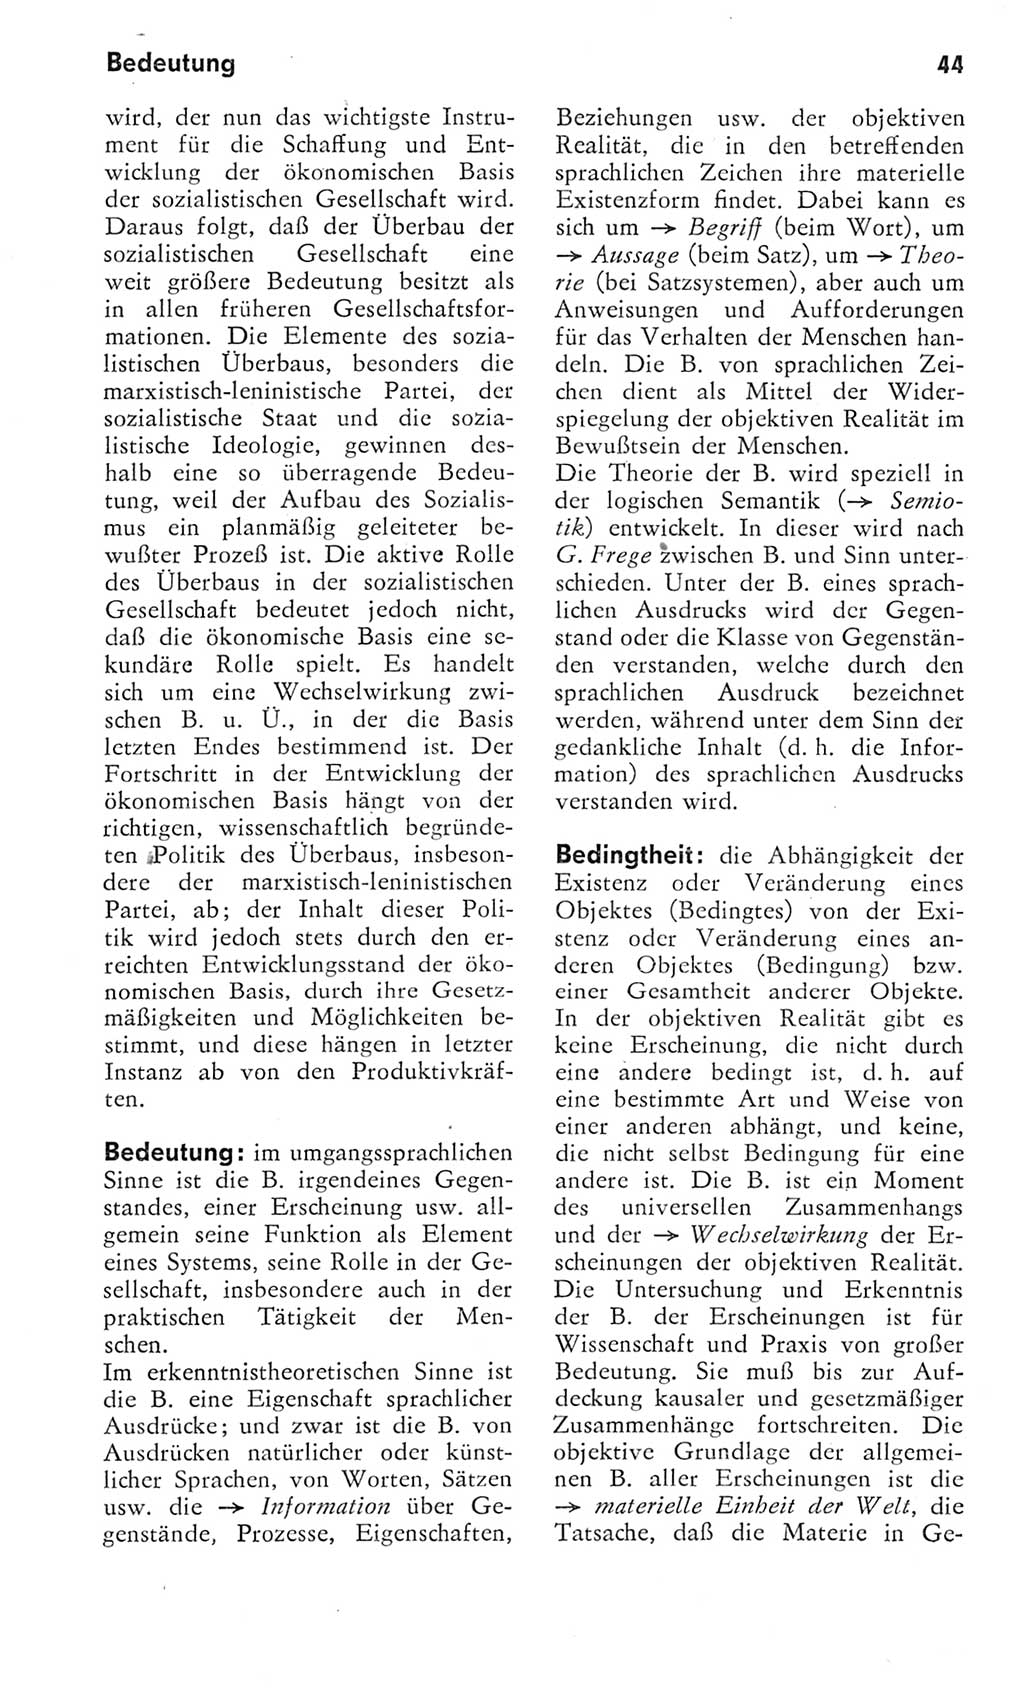 Kleines Wörterbuch der marxistisch-leninistischen Philosophie [Deutsche Demokratische Republik (DDR)] 1975, Seite 44 (Kl. Wb. ML Phil. DDR 1975, S. 44)